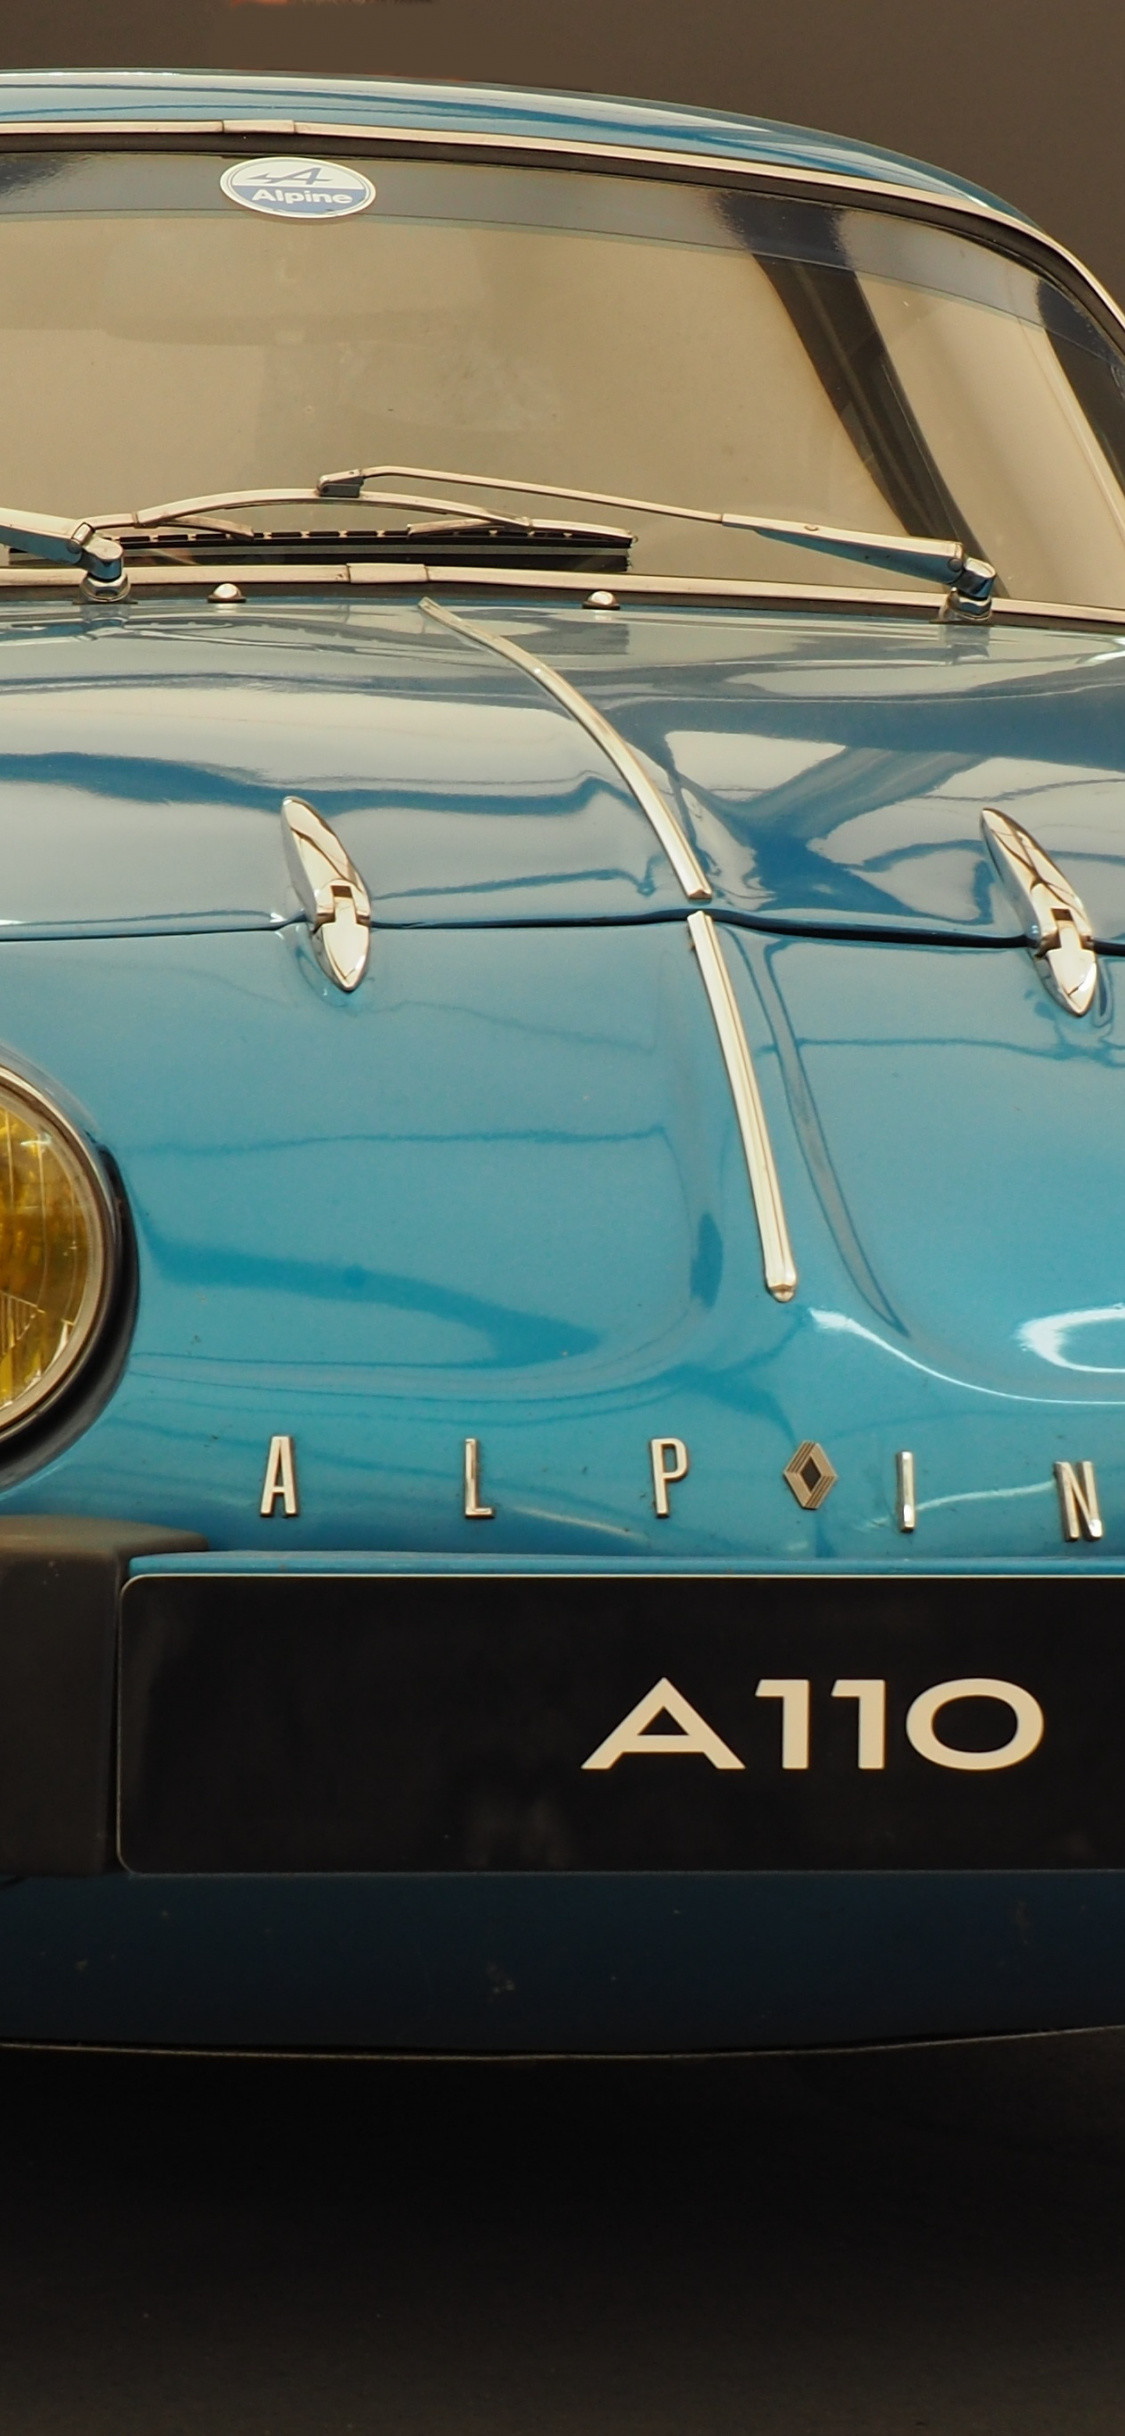 1125x2436 Alpine A110, classic car, front,  wallpaper